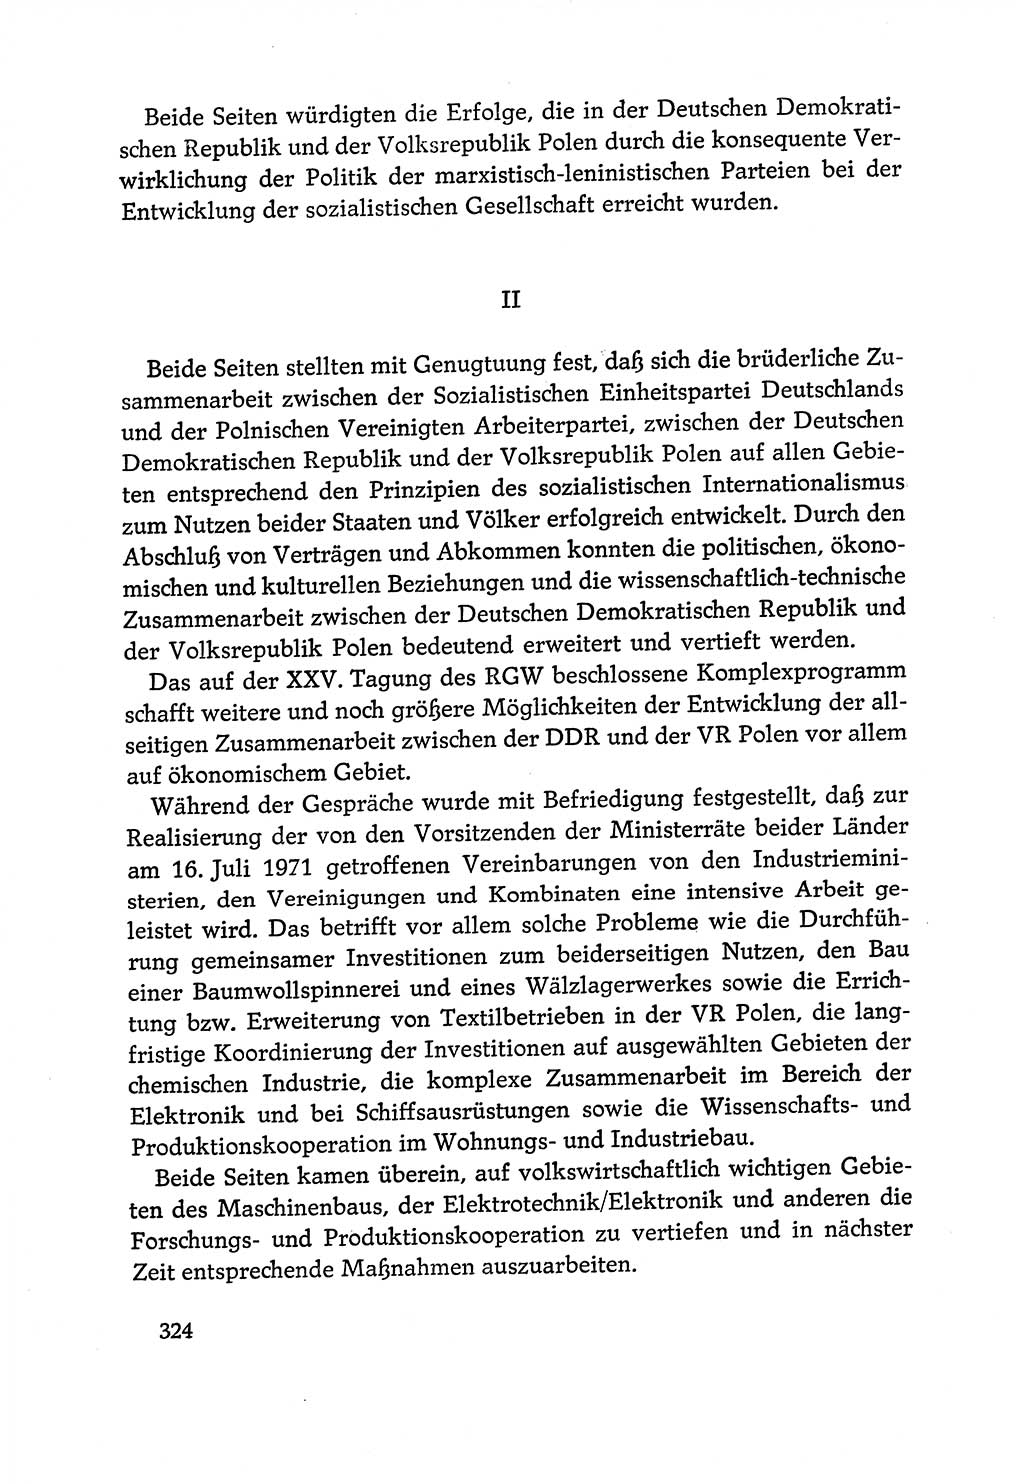 Dokumente der Sozialistischen Einheitspartei Deutschlands (SED) [Deutsche Demokratische Republik (DDR)] 1970-1971, Seite 324 (Dok. SED DDR 1970-1971, S. 324)